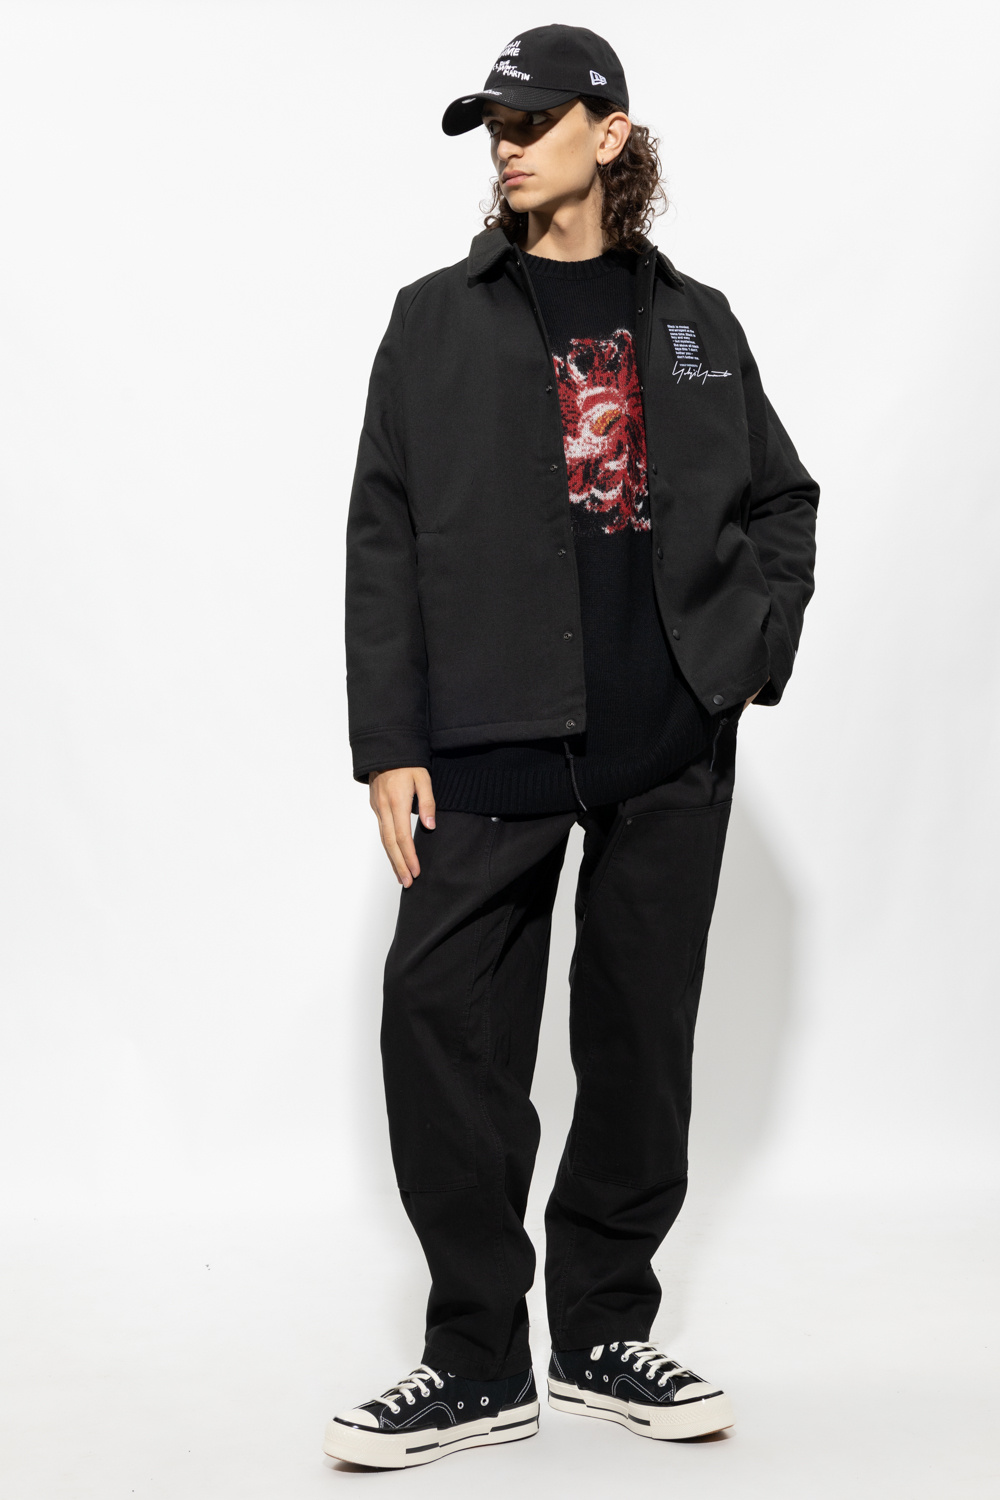 Yohji Yamamoto clothing women cups shoe-care belts accessories